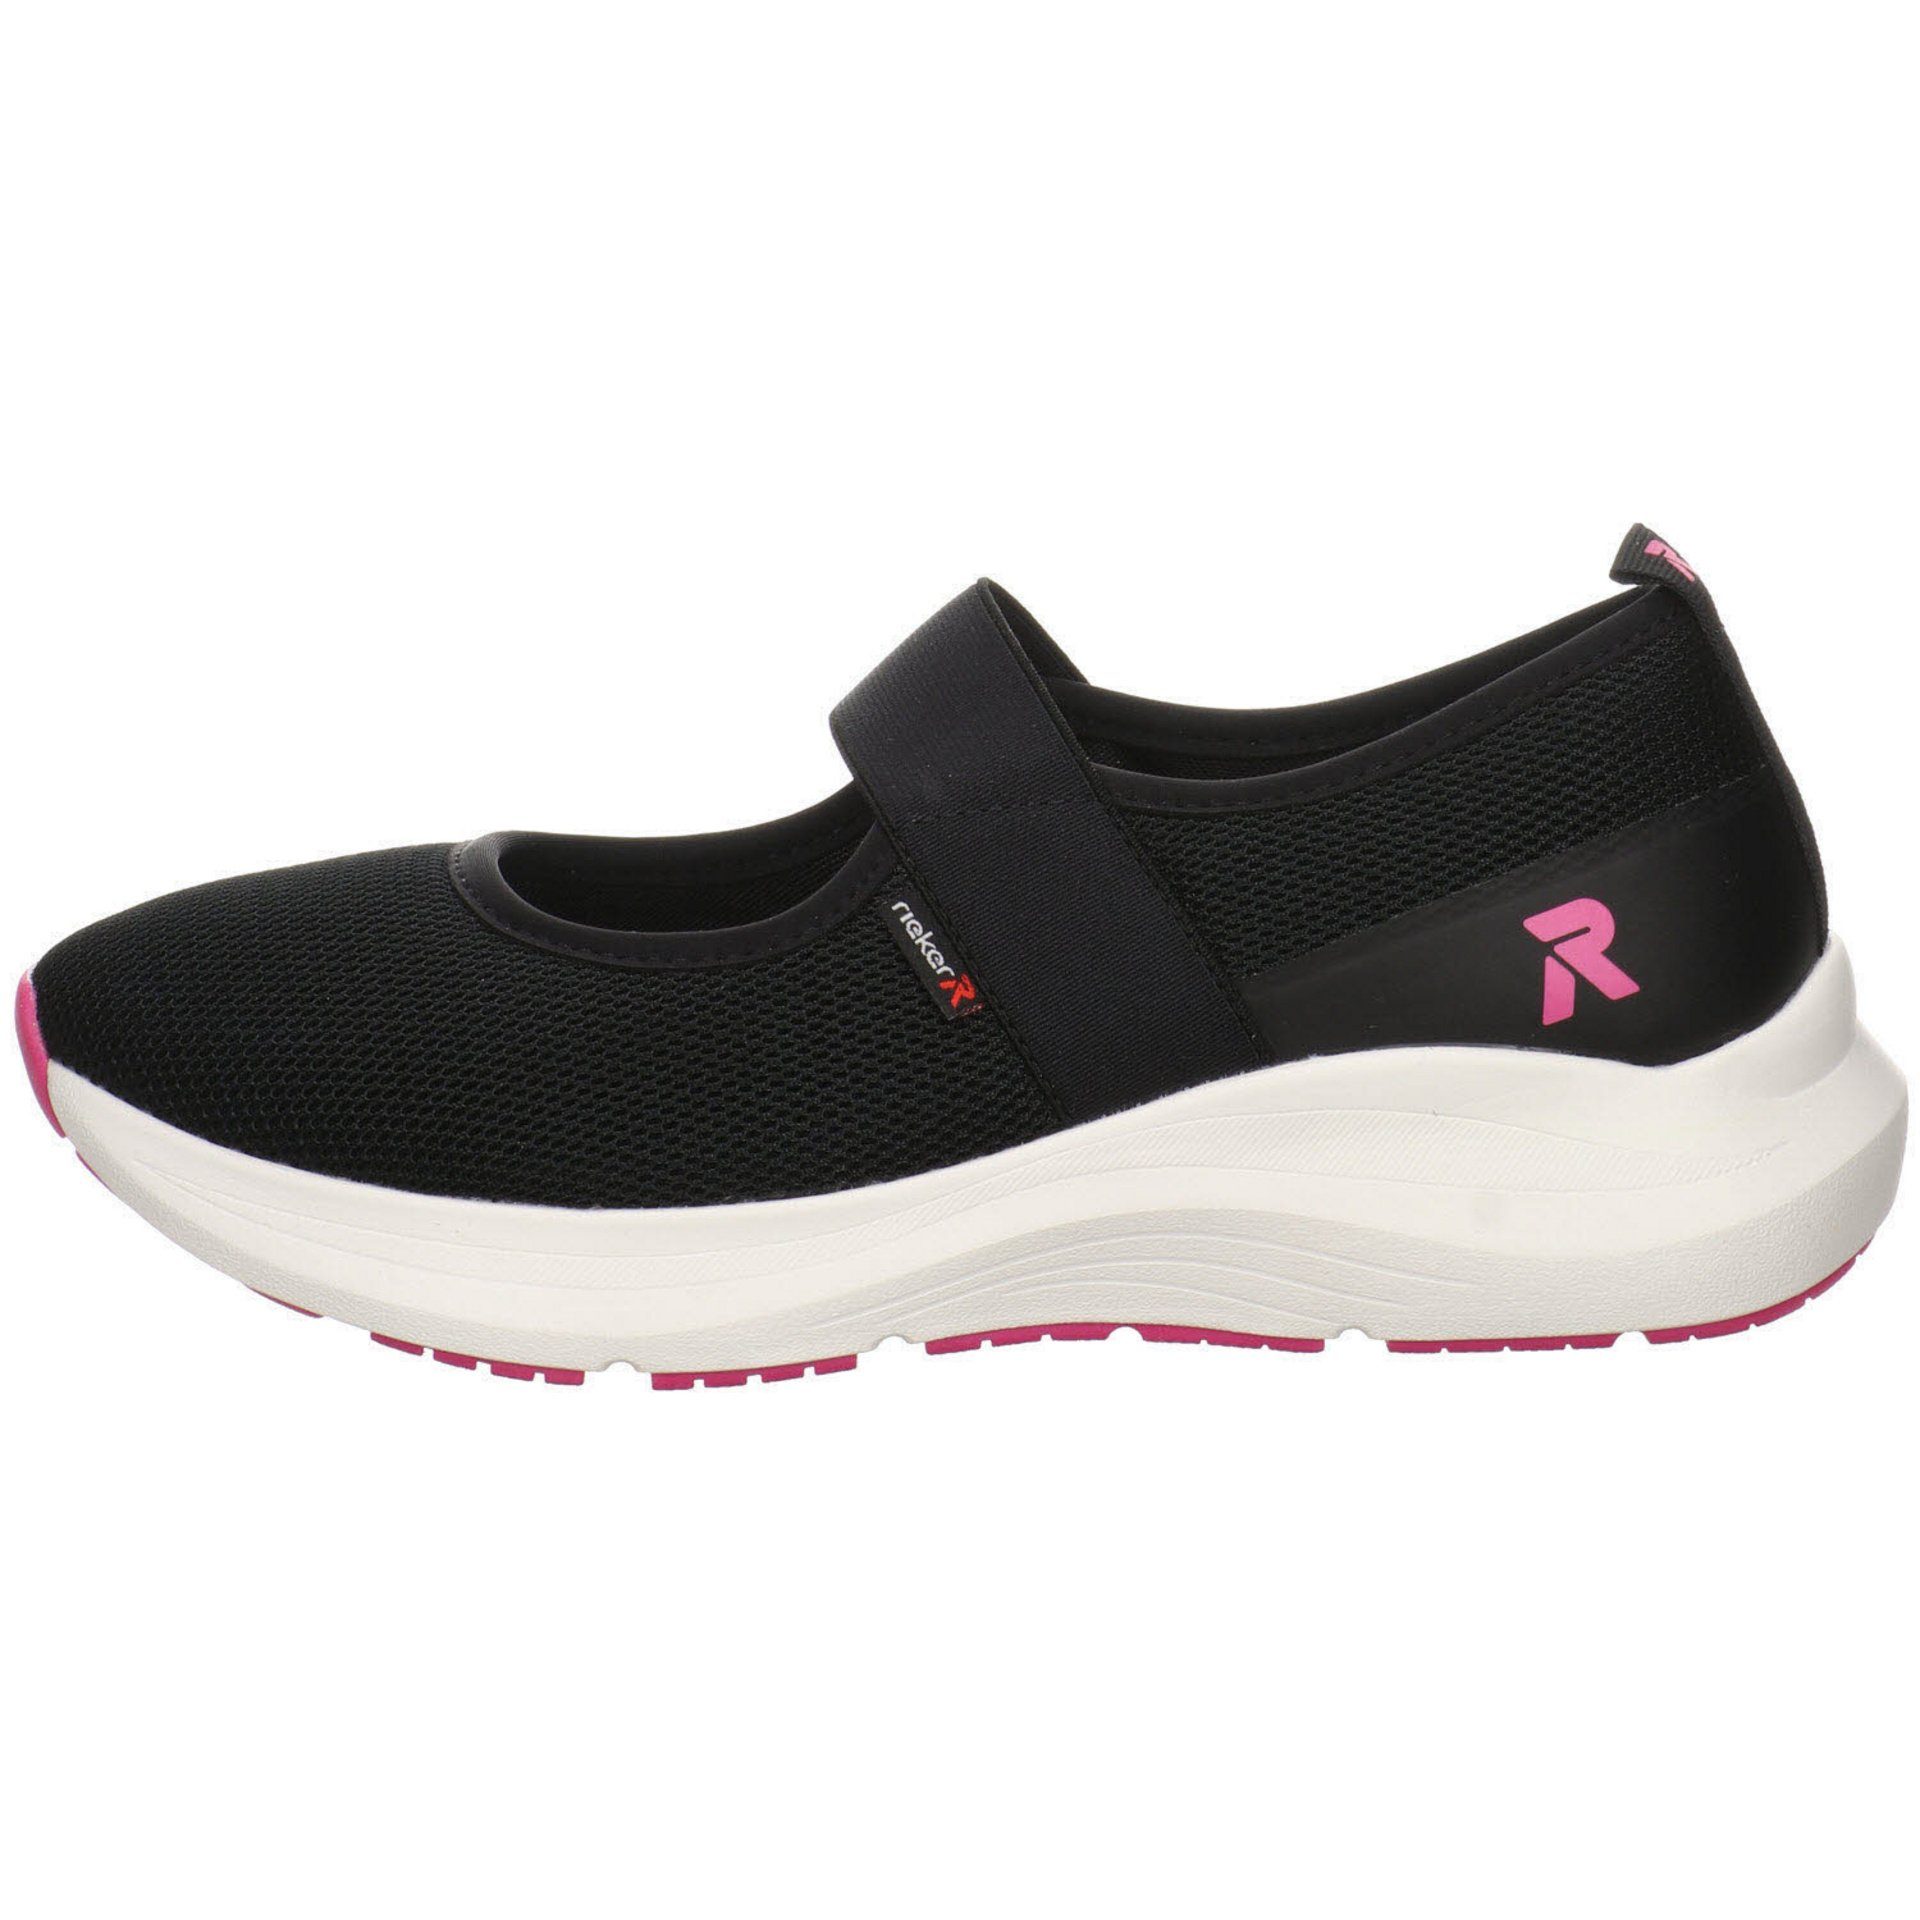 Schuhe schwarz/schwarz/nero Rieker R-Evolution Ballerina Ballerina Textil Ballerinas